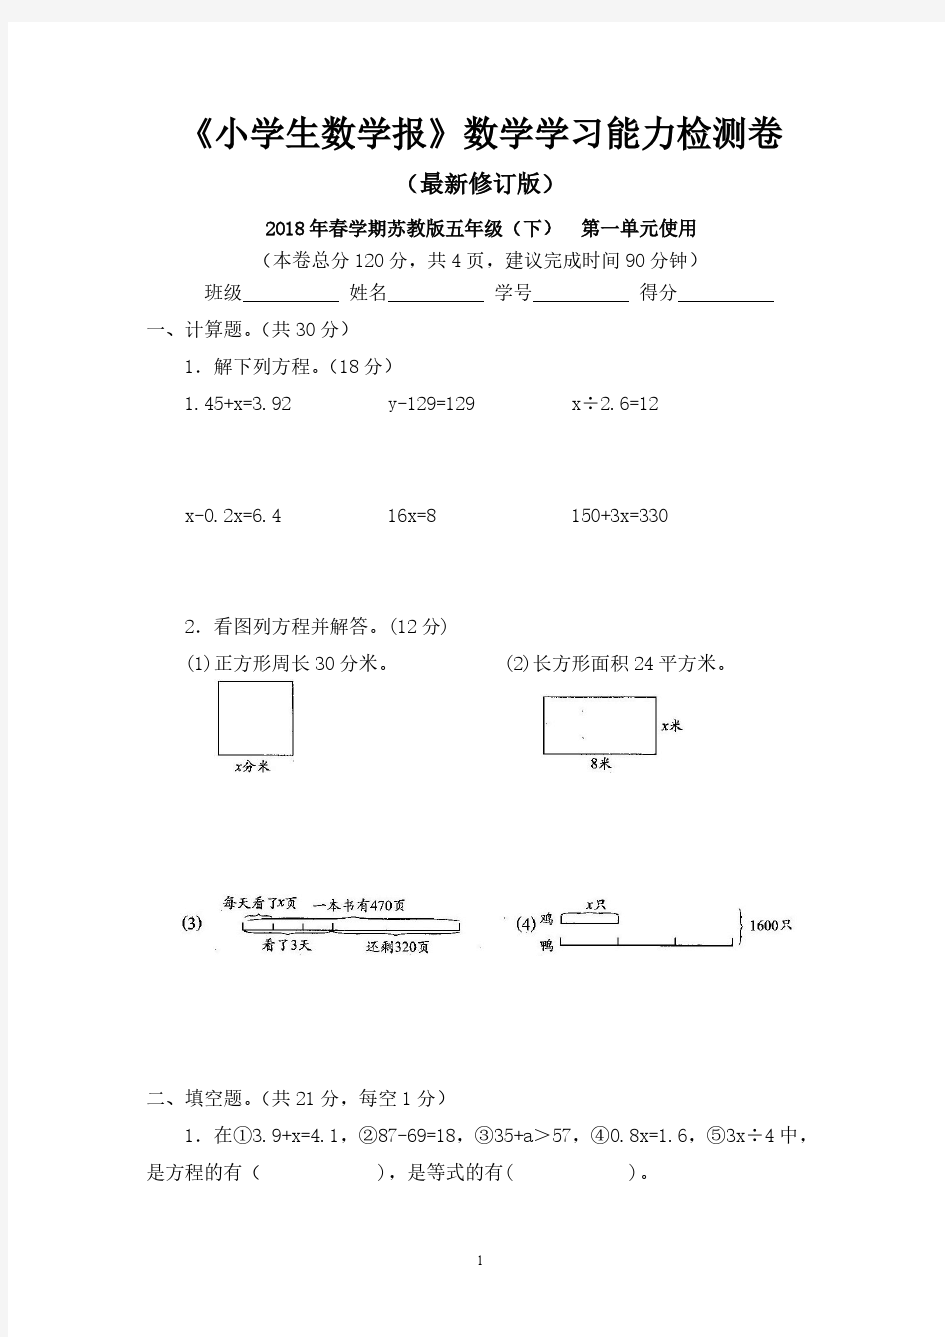 2018-2019苏教版小学数学5五年级下册(全套)试卷